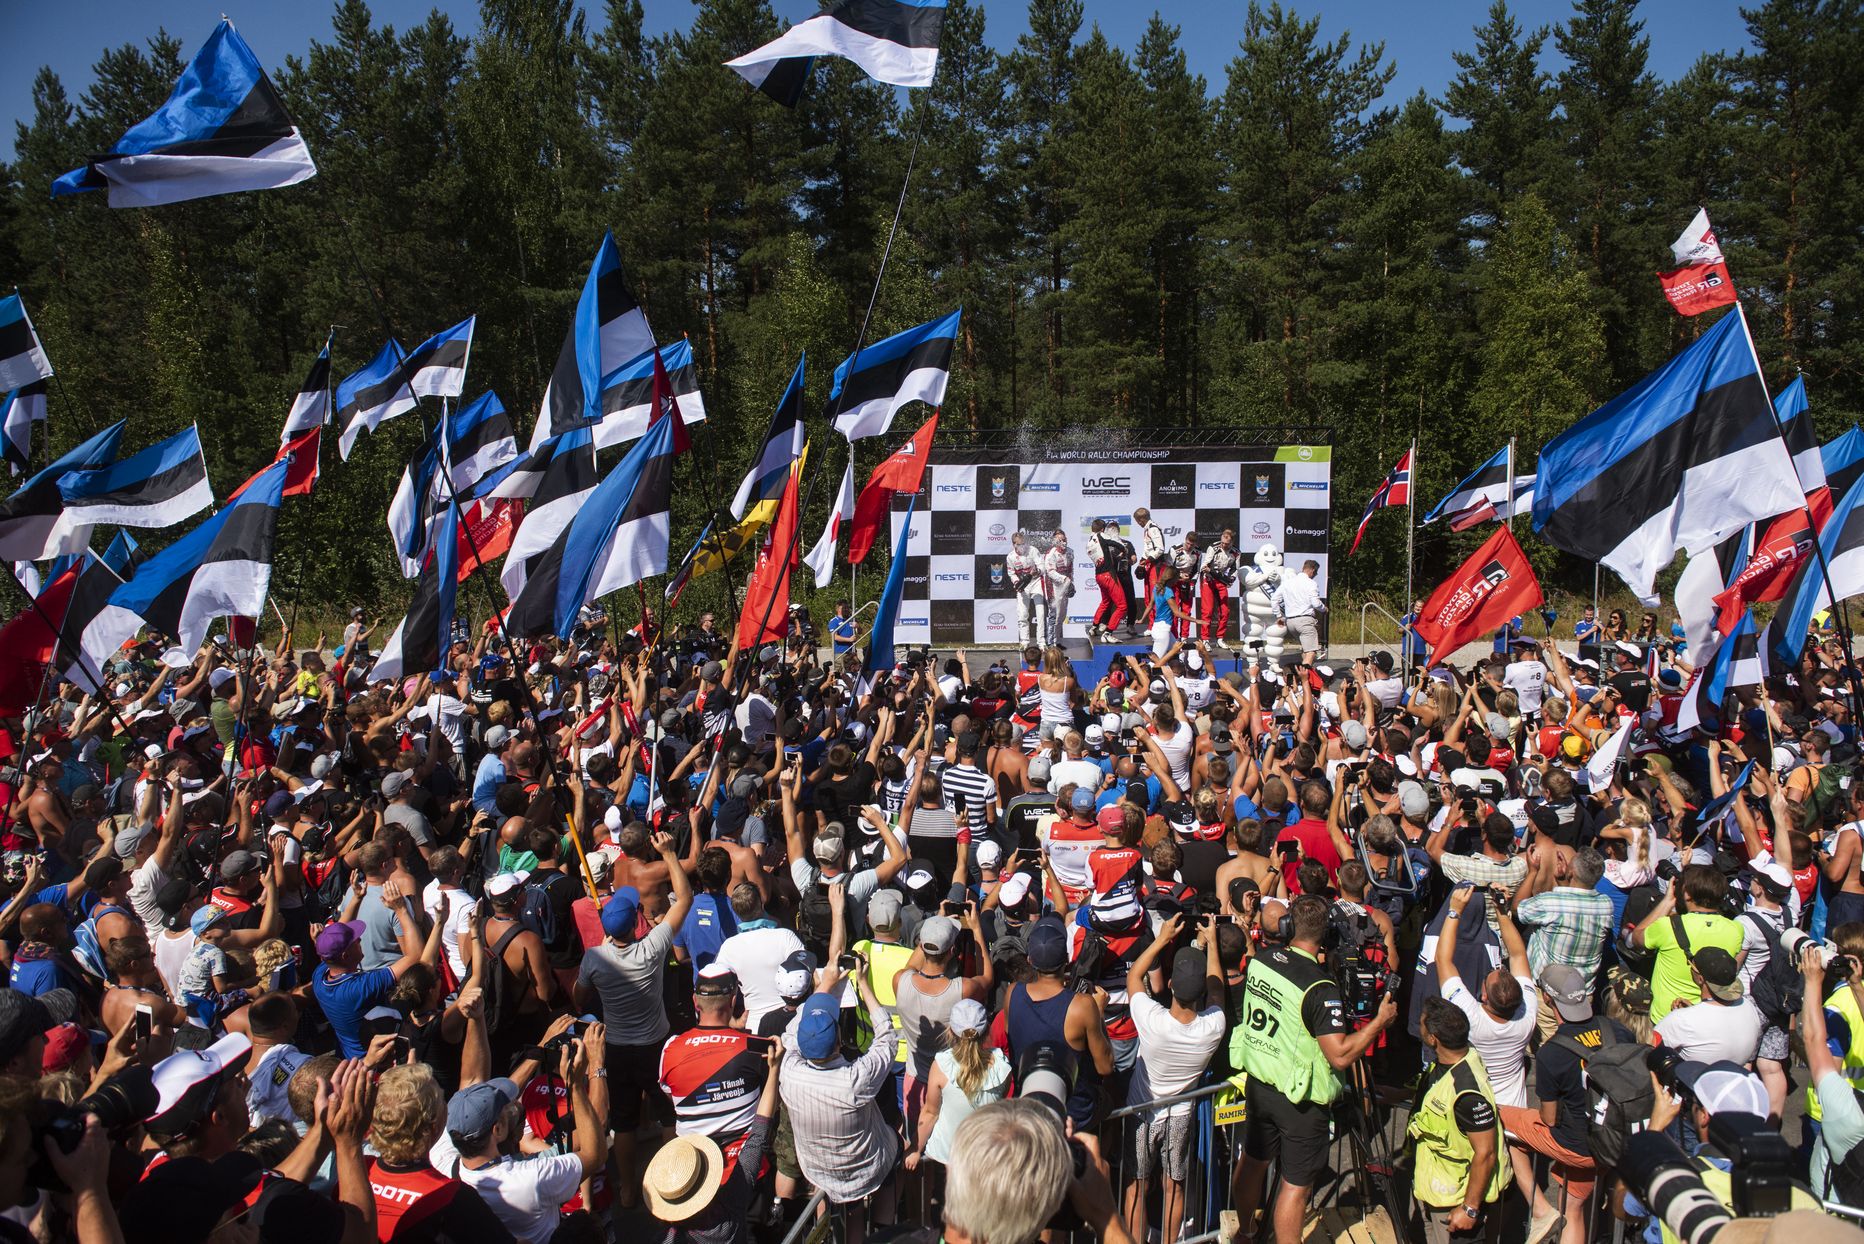 Eesti rallifännid mullu toimunud Soome MM-rallil, kus teatavasti Ott Tänak ja Martin järveoja (Toyota) tõusid poodiumi kõrgeimale astmele.